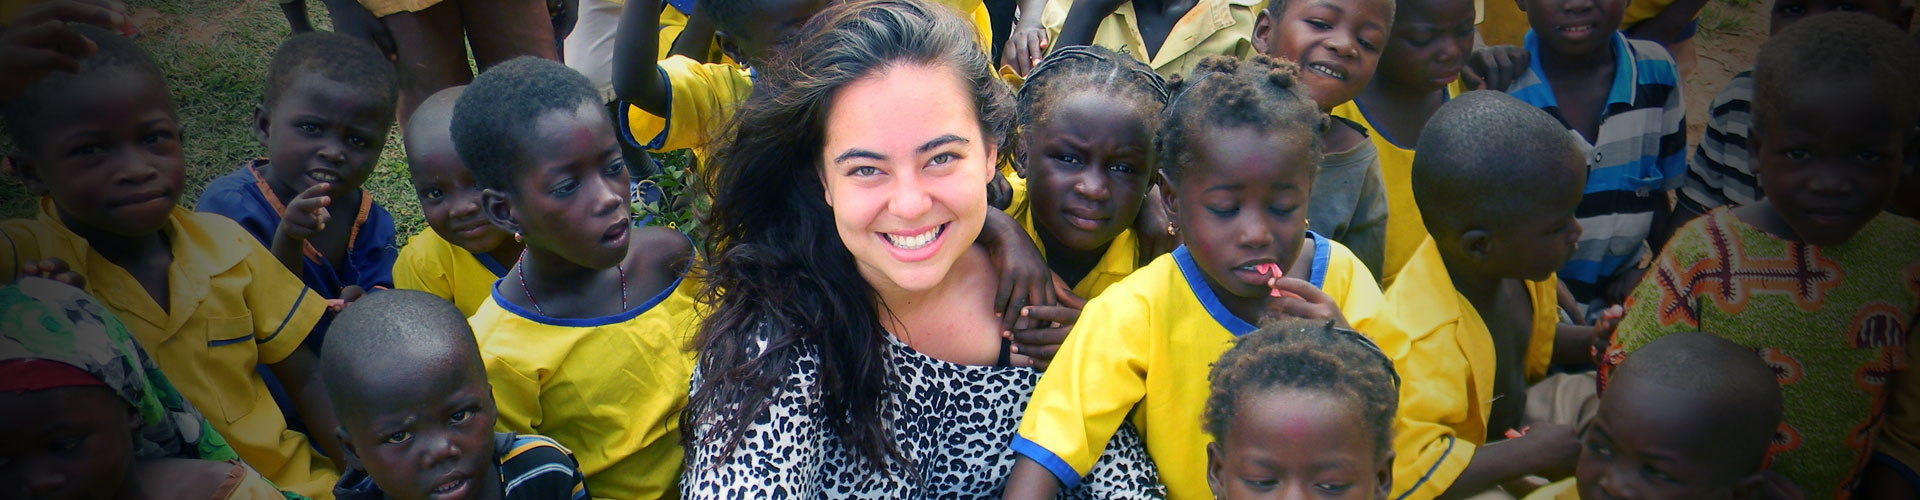 Programa de voluntariado en orfanatos en Ghana